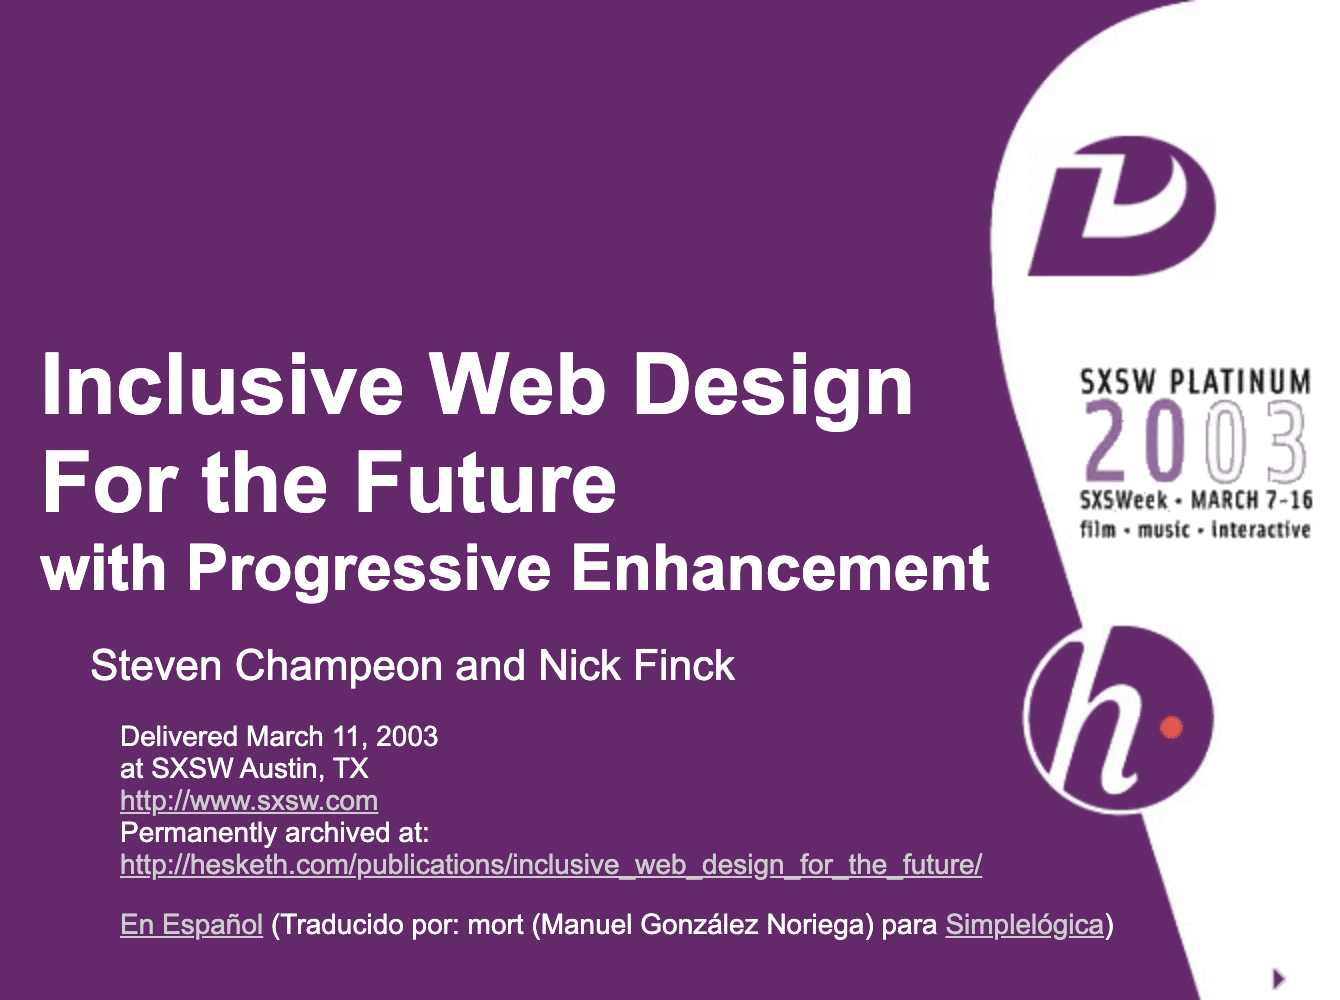 Web design inclusivo para o futuro com aprimoramento progressivo. Slide com título da apresentação original de Finck e Champeon.